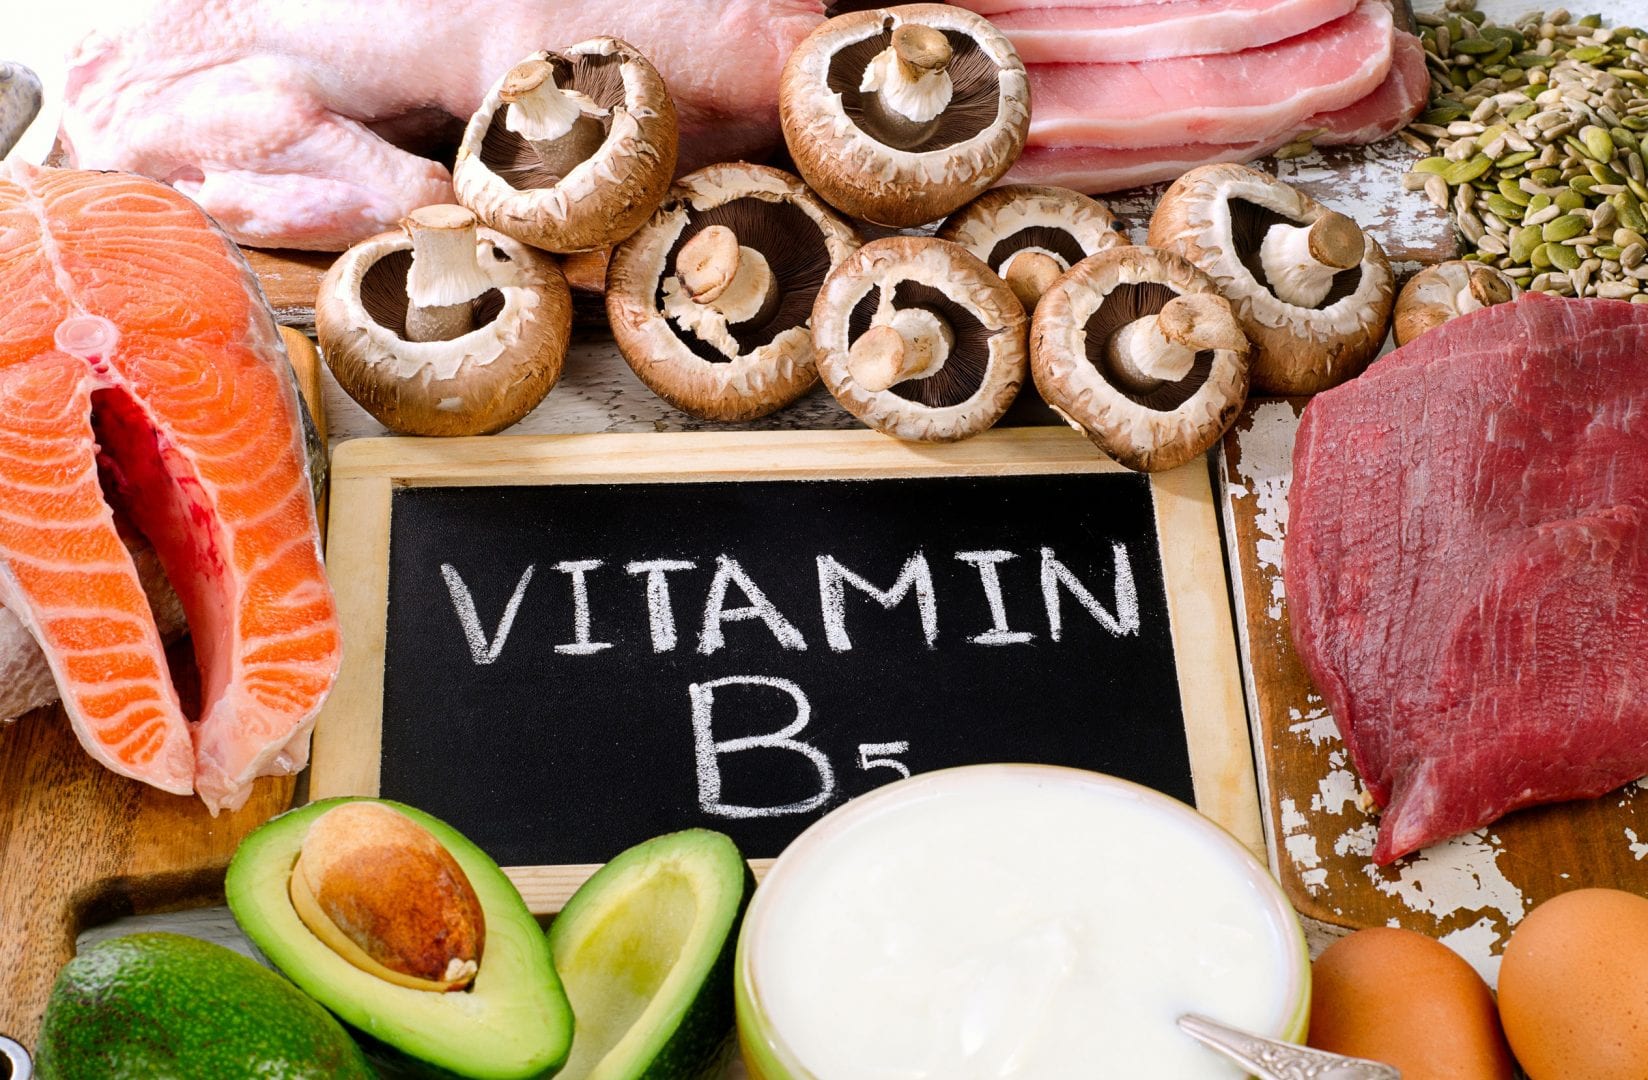 Vitaminas - nutrientes essenciais para o bom funcionamento do corpo